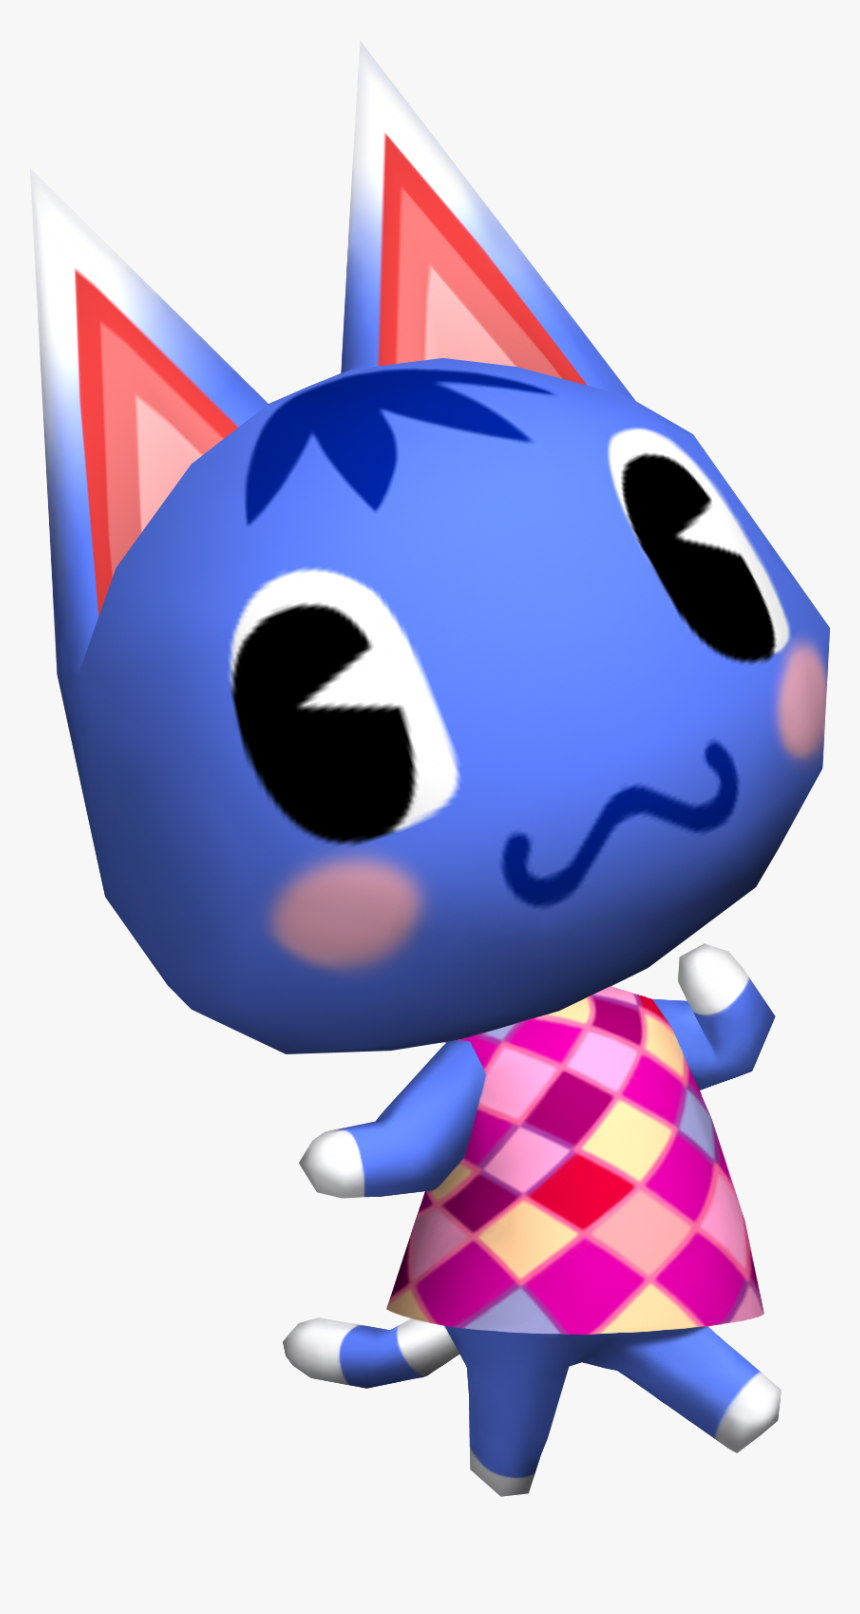 Rosie Cf - Rosie Animal Crossing Wii, HD Png Download, Free Download